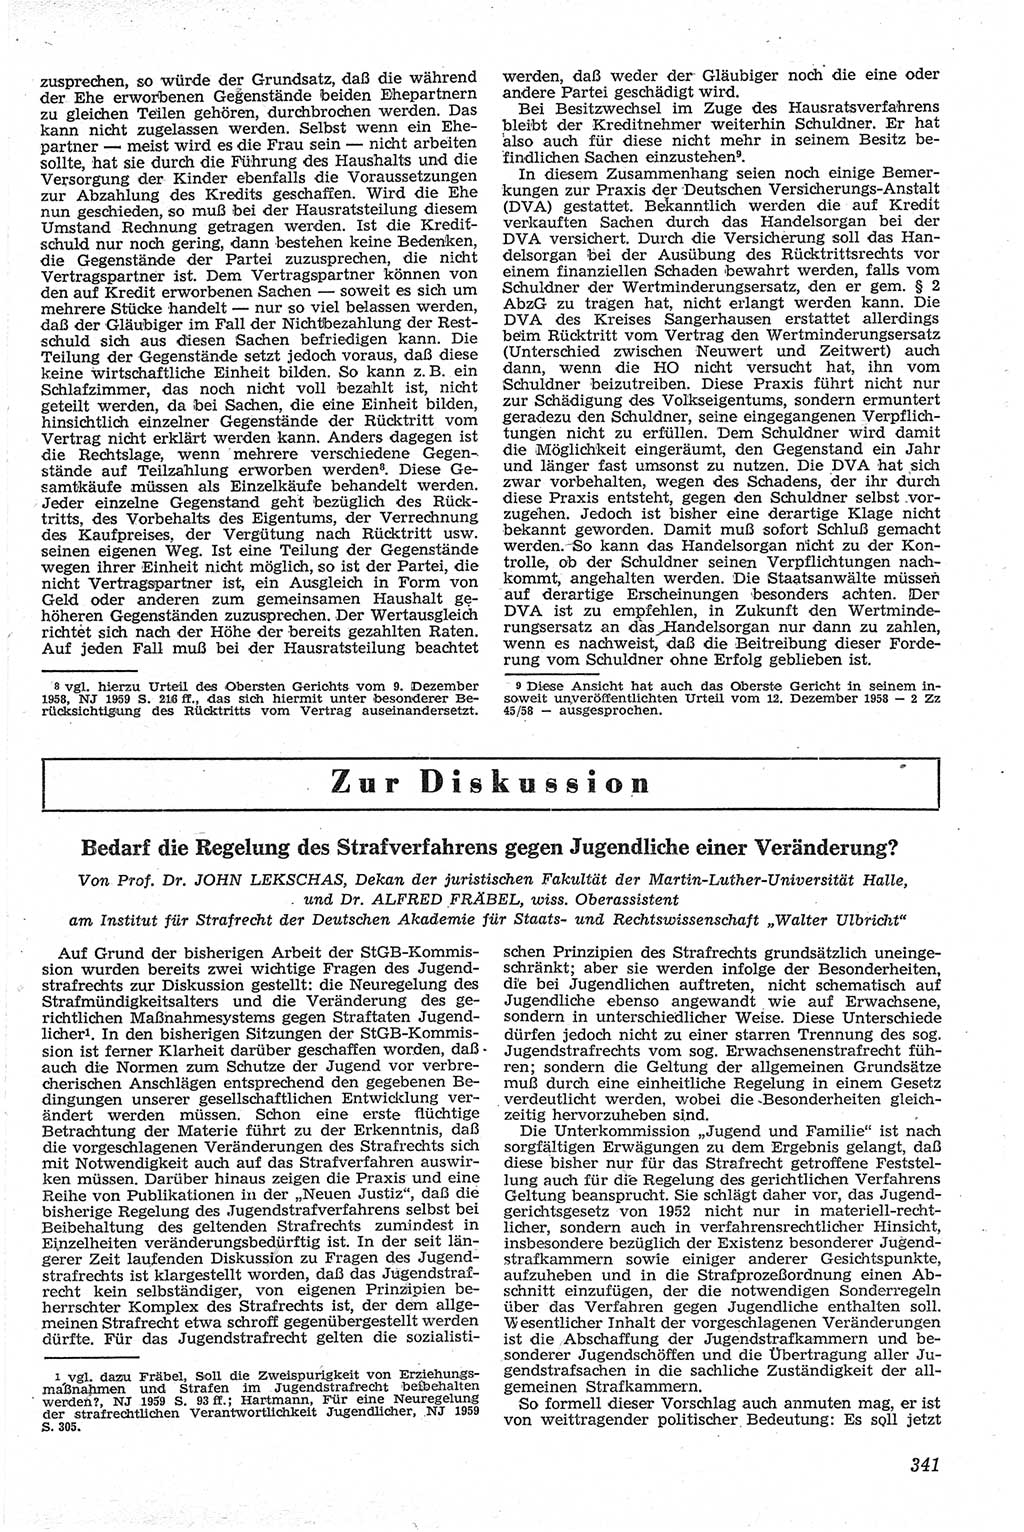 Neue Justiz (NJ), Zeitschrift für Recht und Rechtswissenschaft [Deutsche Demokratische Republik (DDR)], 13. Jahrgang 1959, Seite 341 (NJ DDR 1959, S. 341)